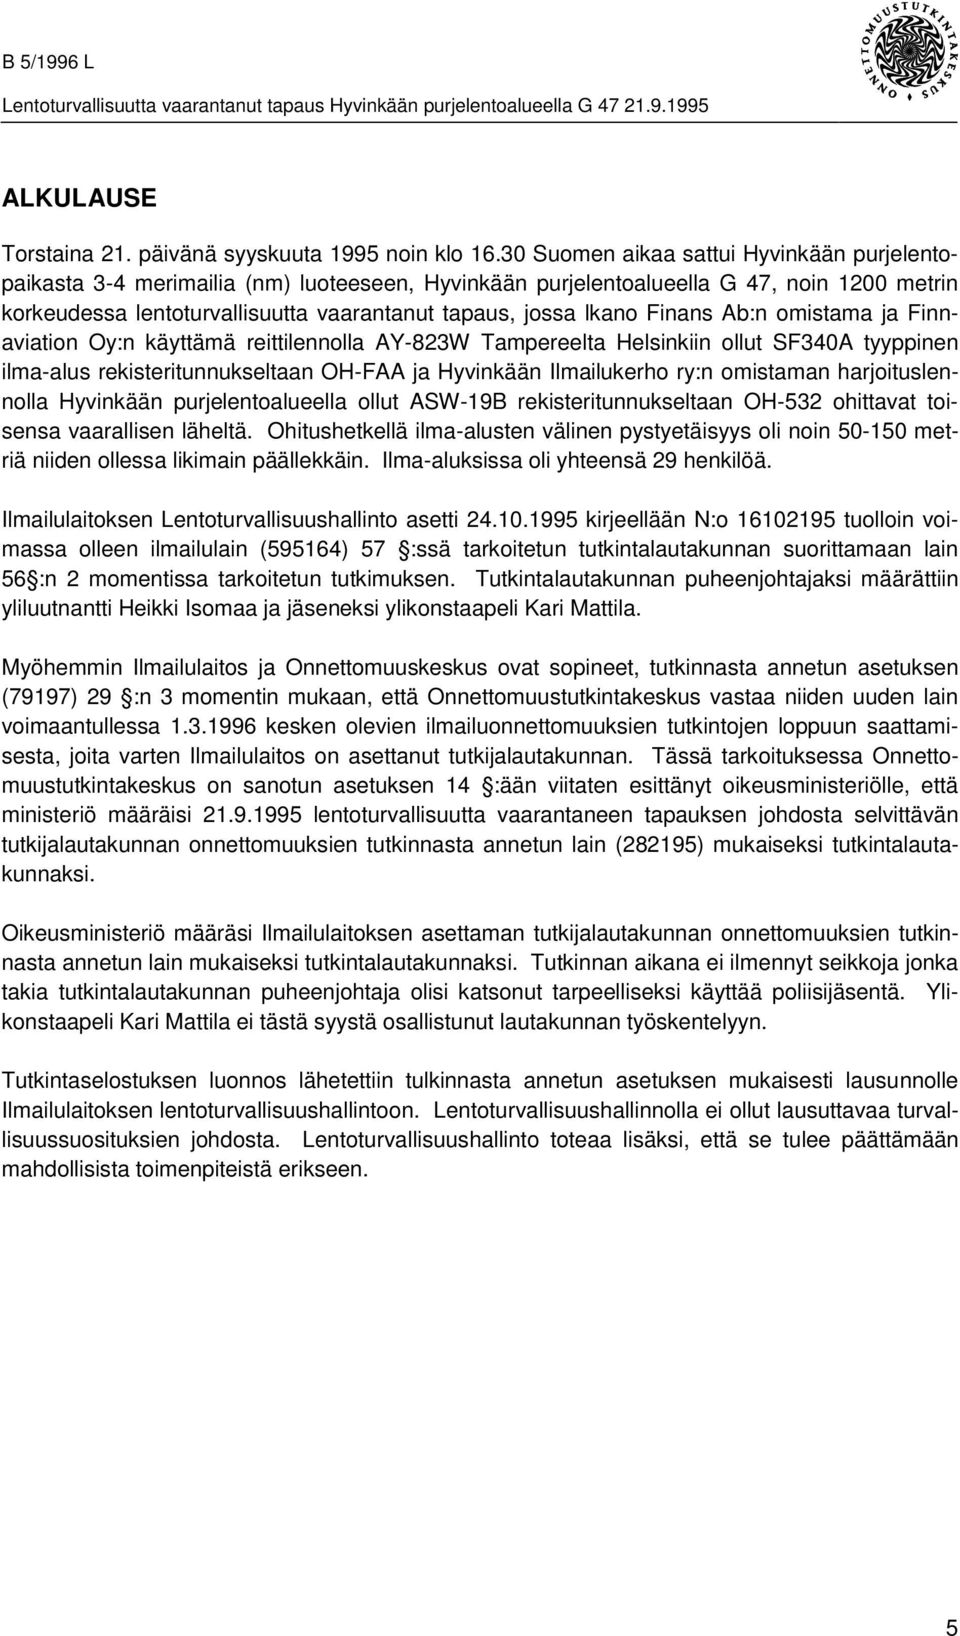 Finans b:n omistama ja Finnaviation Oy:n käyttämä reittilennolla Y-823W Tampereelta Helsinkiin ollut SF340 tyyppinen ilma-alus rekisteritunnukseltaan OH-F ja Hyvinkään Ilmailukerho ry:n omistaman